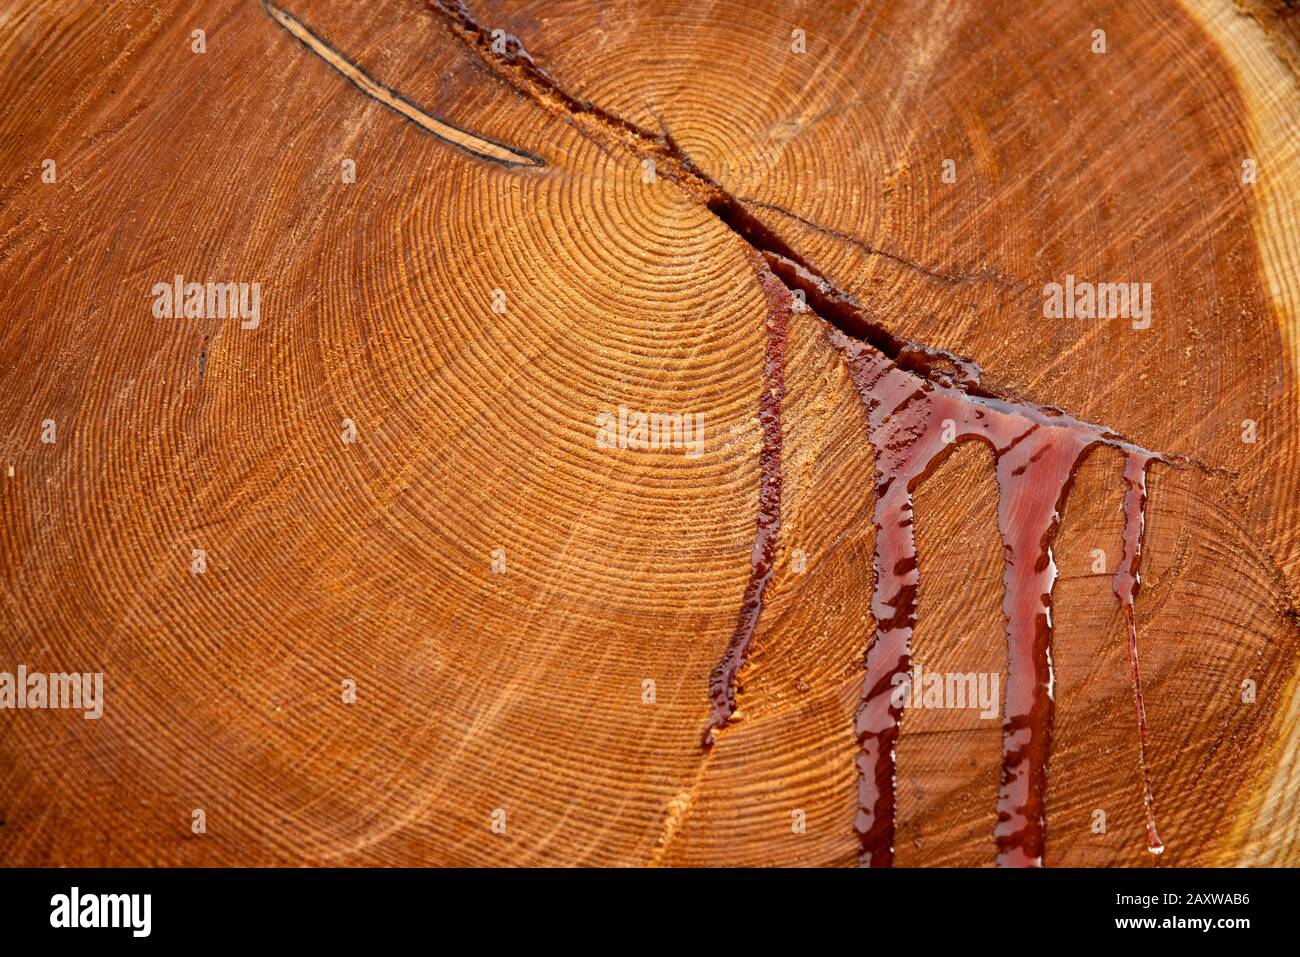 Fuite de sang d'un tronc d'arbre comme symbole de destruction environnementale Banque D'Images